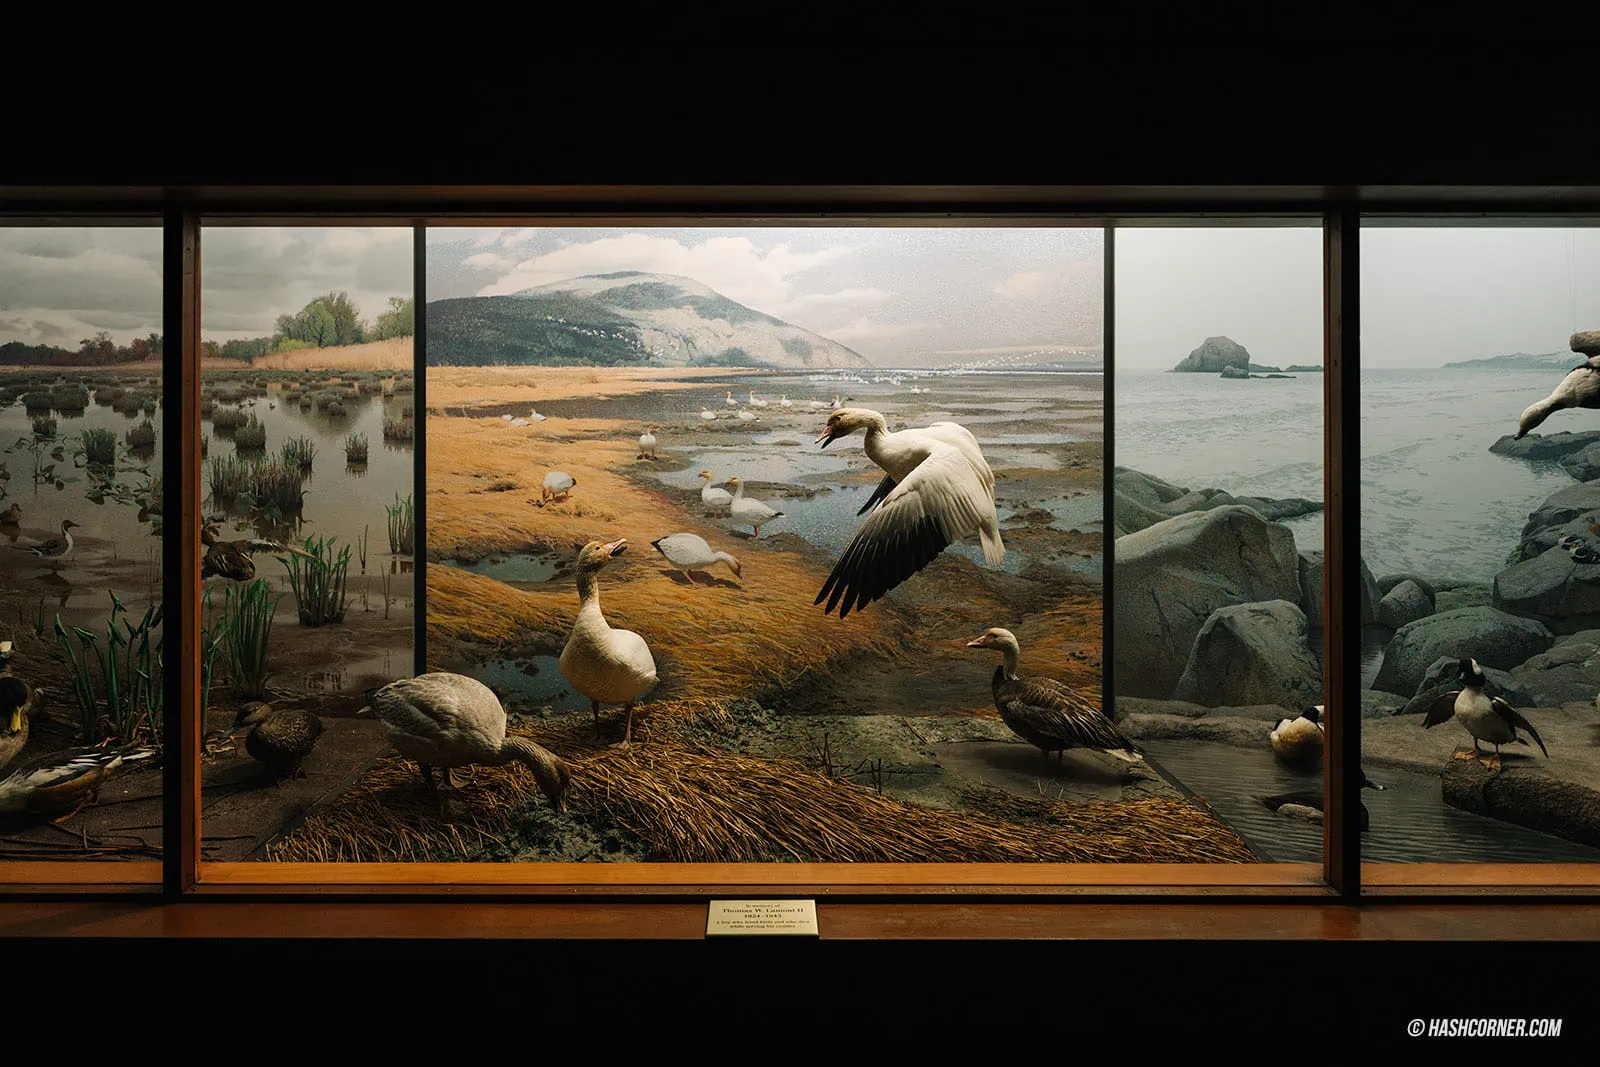 รีวิว American Museum of Natural History x นิวยอร์ก อเมริกา